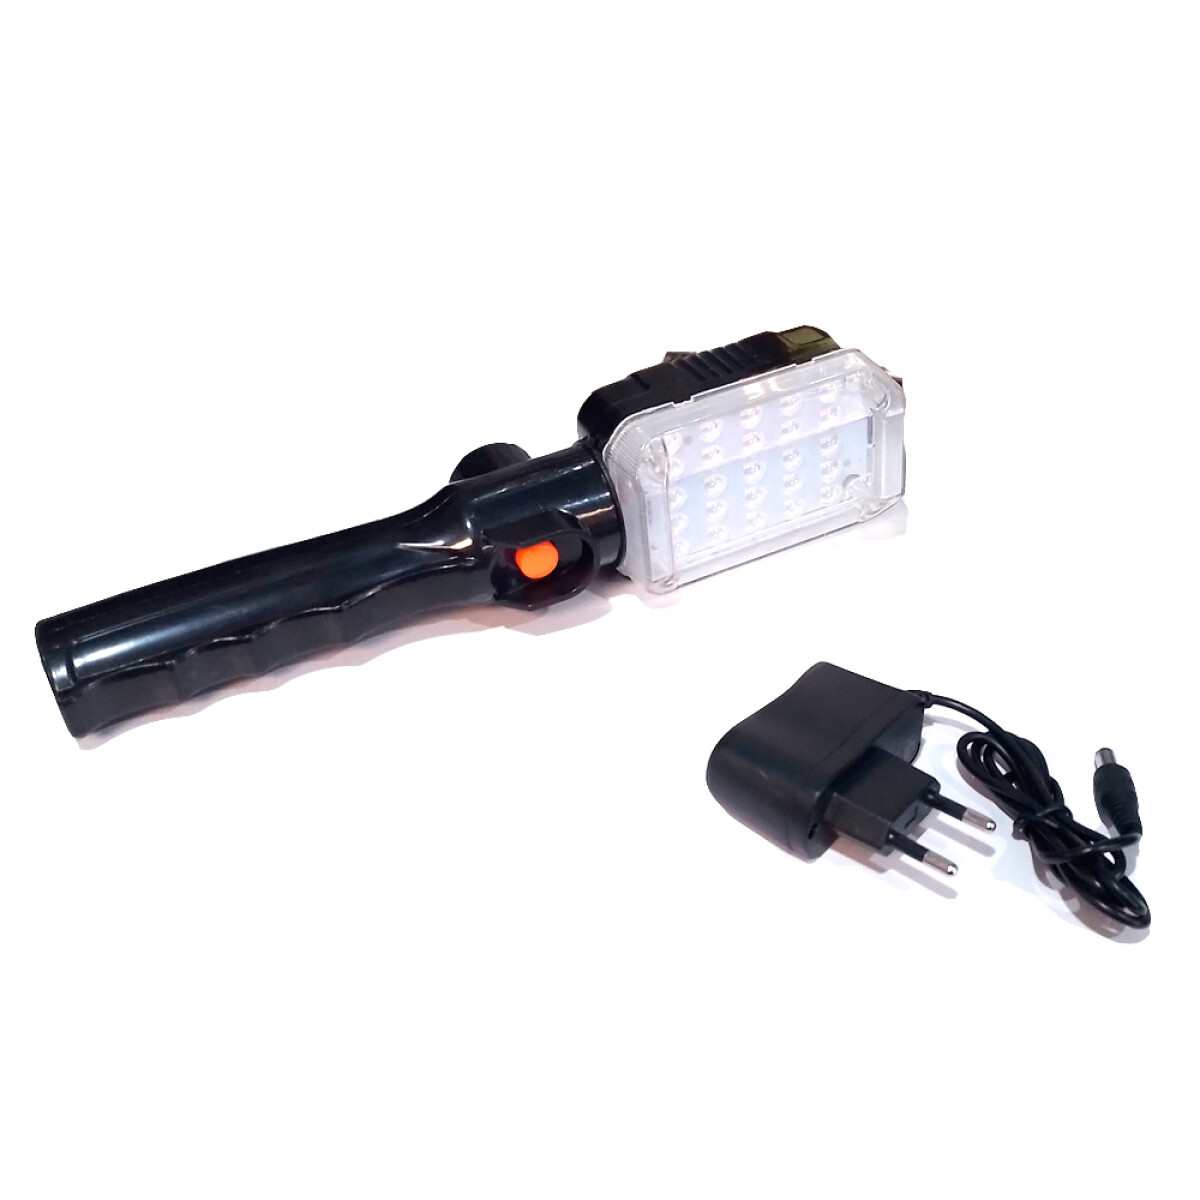 CAMPING - LAMPARA TALLER 25 LED C/ENCHUFE 220V - 